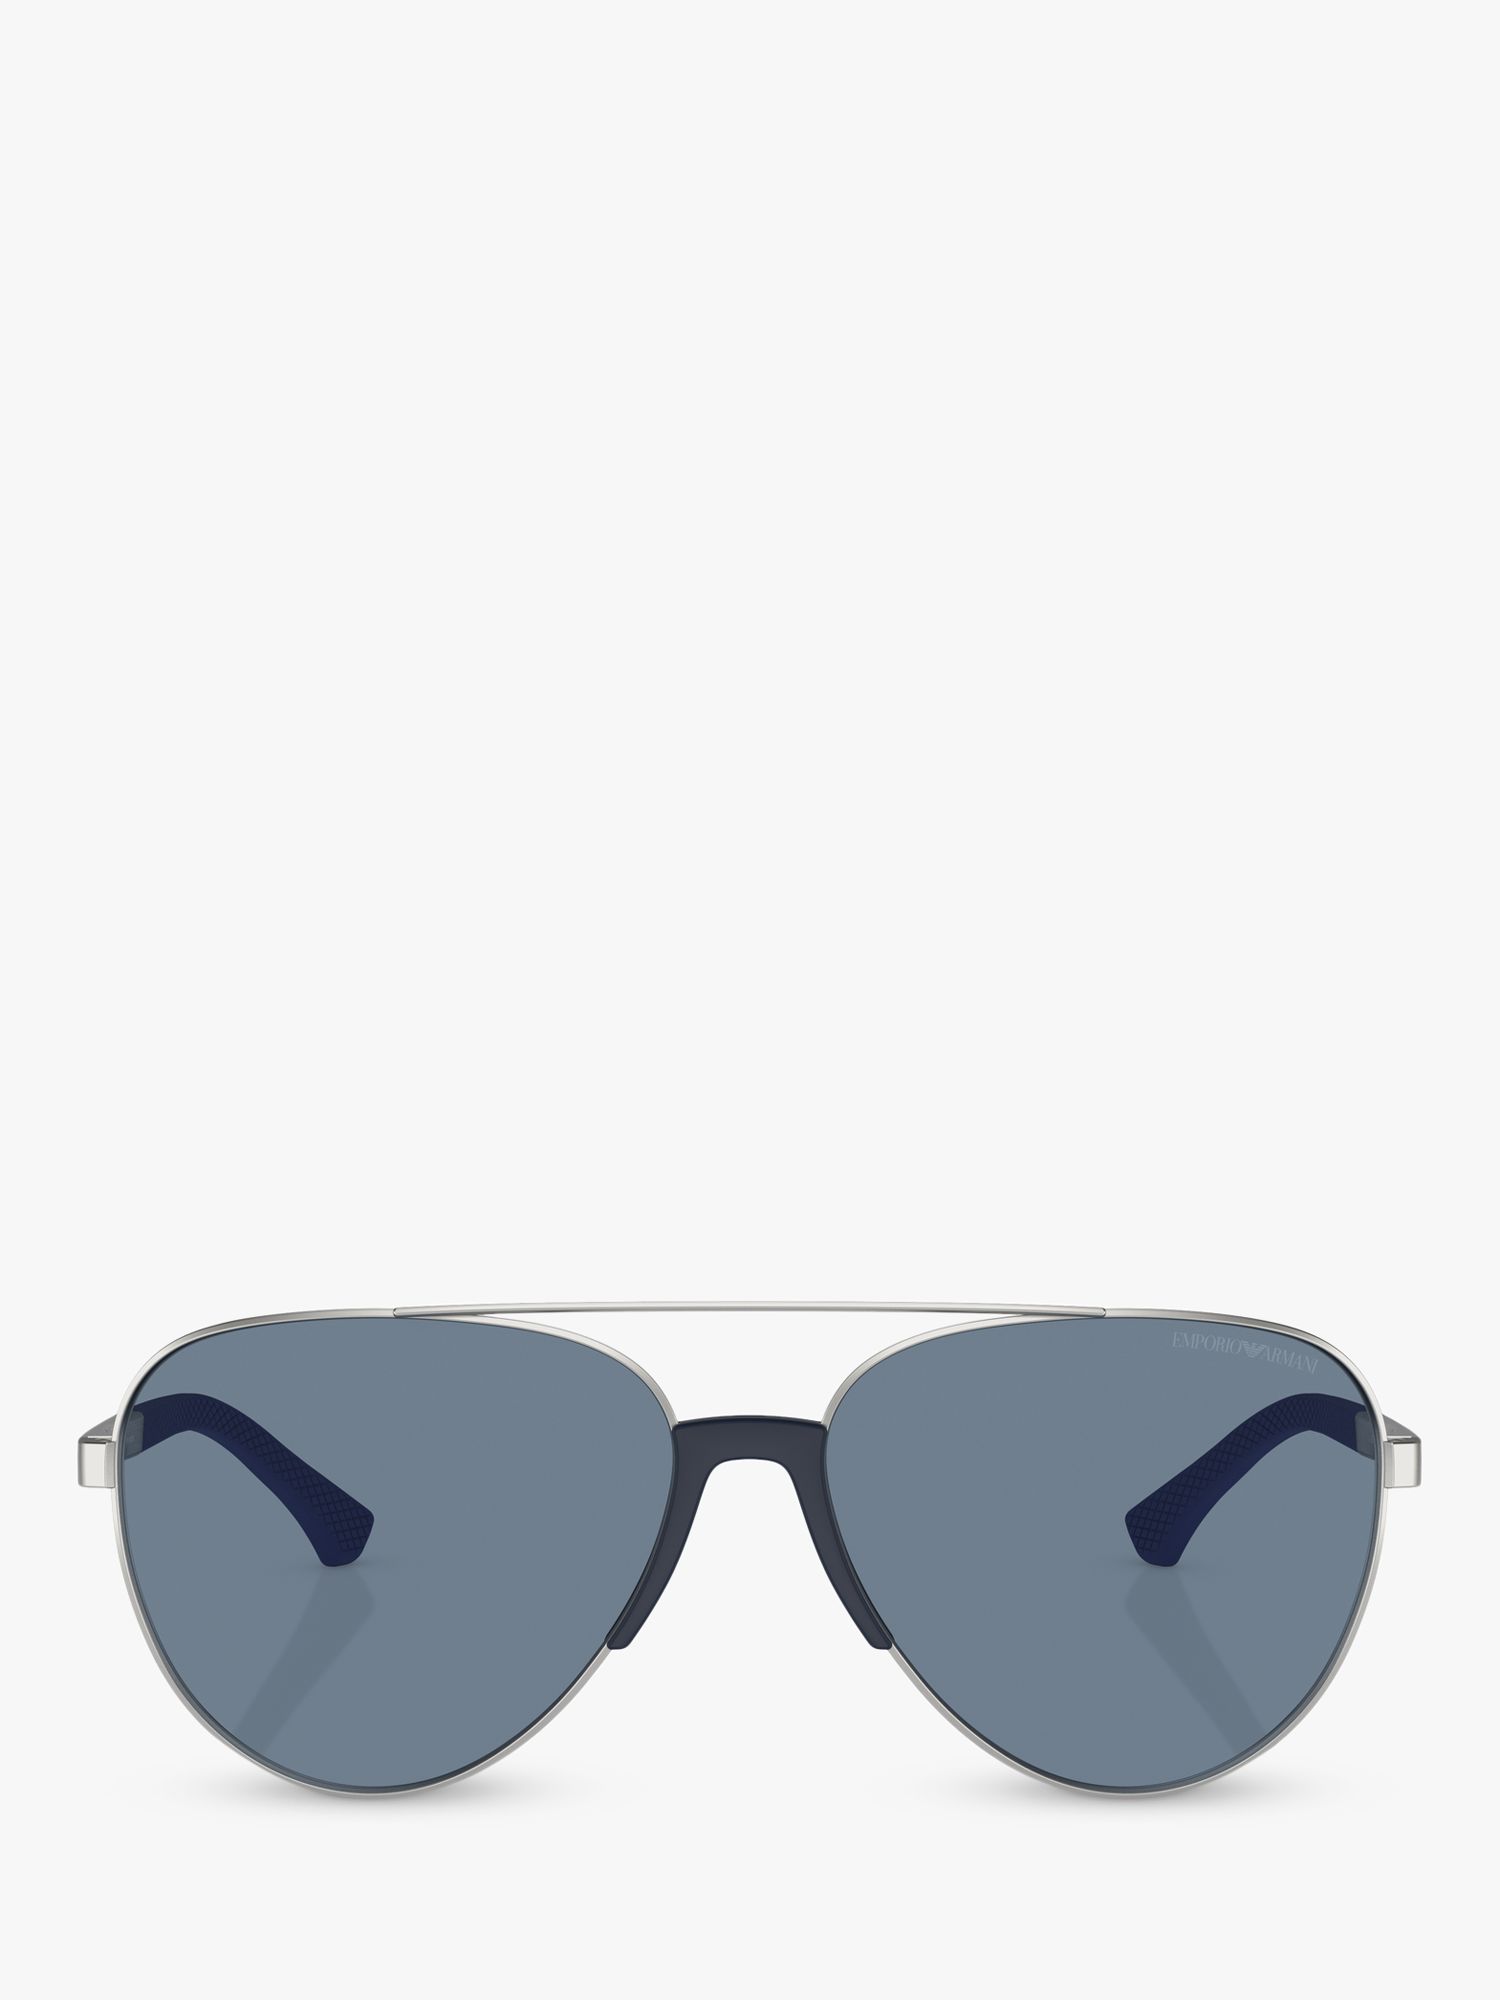 Emporio Armani EA2059 Men's Polarised Aviator Sunglasses, Matte Silver/Blue